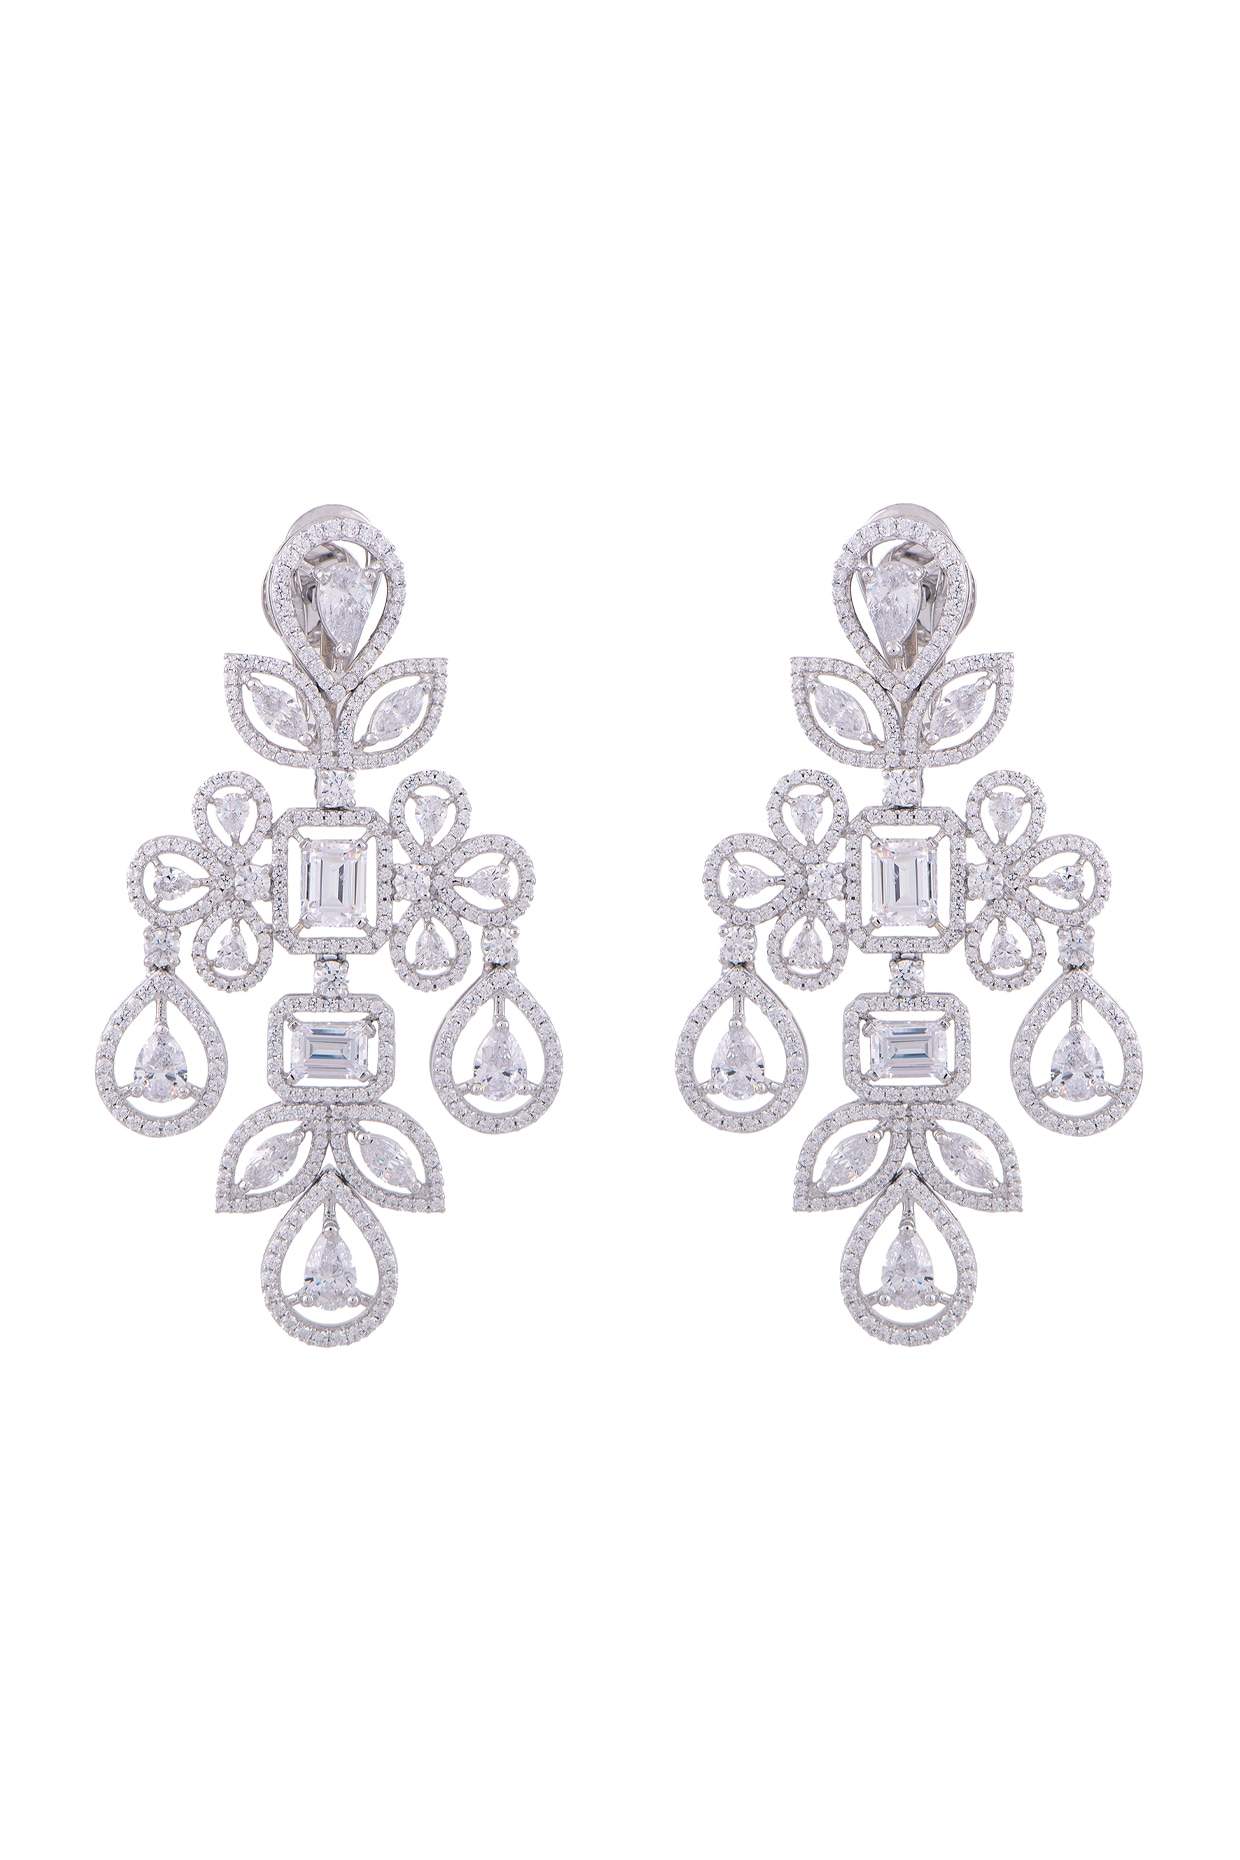 DIOSA PARIS JEWELLERY Swarovski Zirconia Earrings | Jewellery, Earrings,  Danglers And Drops, Multi Color,… | Paris jewelry, Online jewelry, Sterling  silver earrings